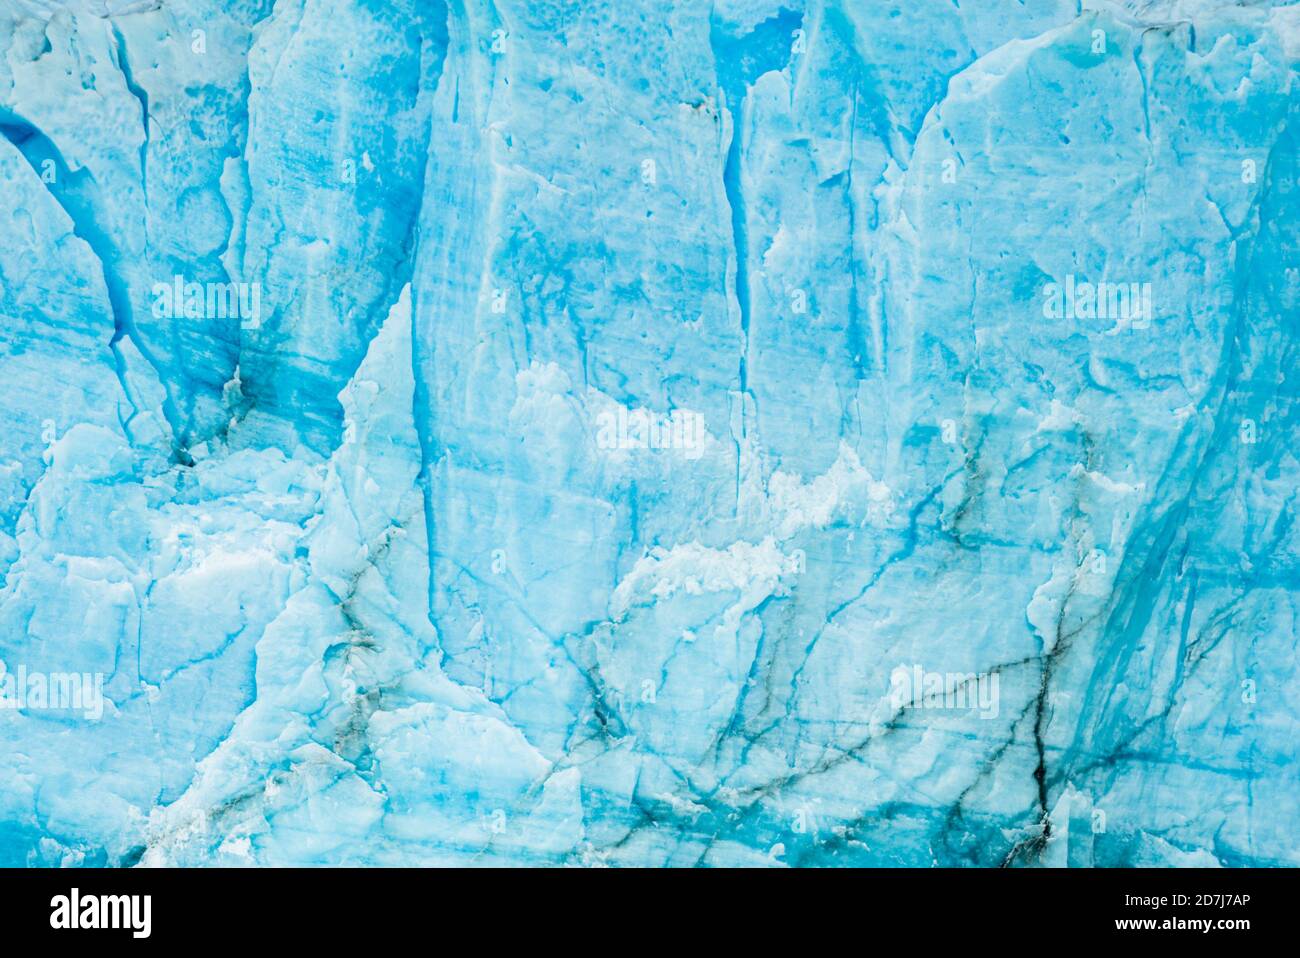 The calving face of the Perito Moreno Glacier in Parque Nacional Los Glaciares in Patagonia, Argentina Stock Photo